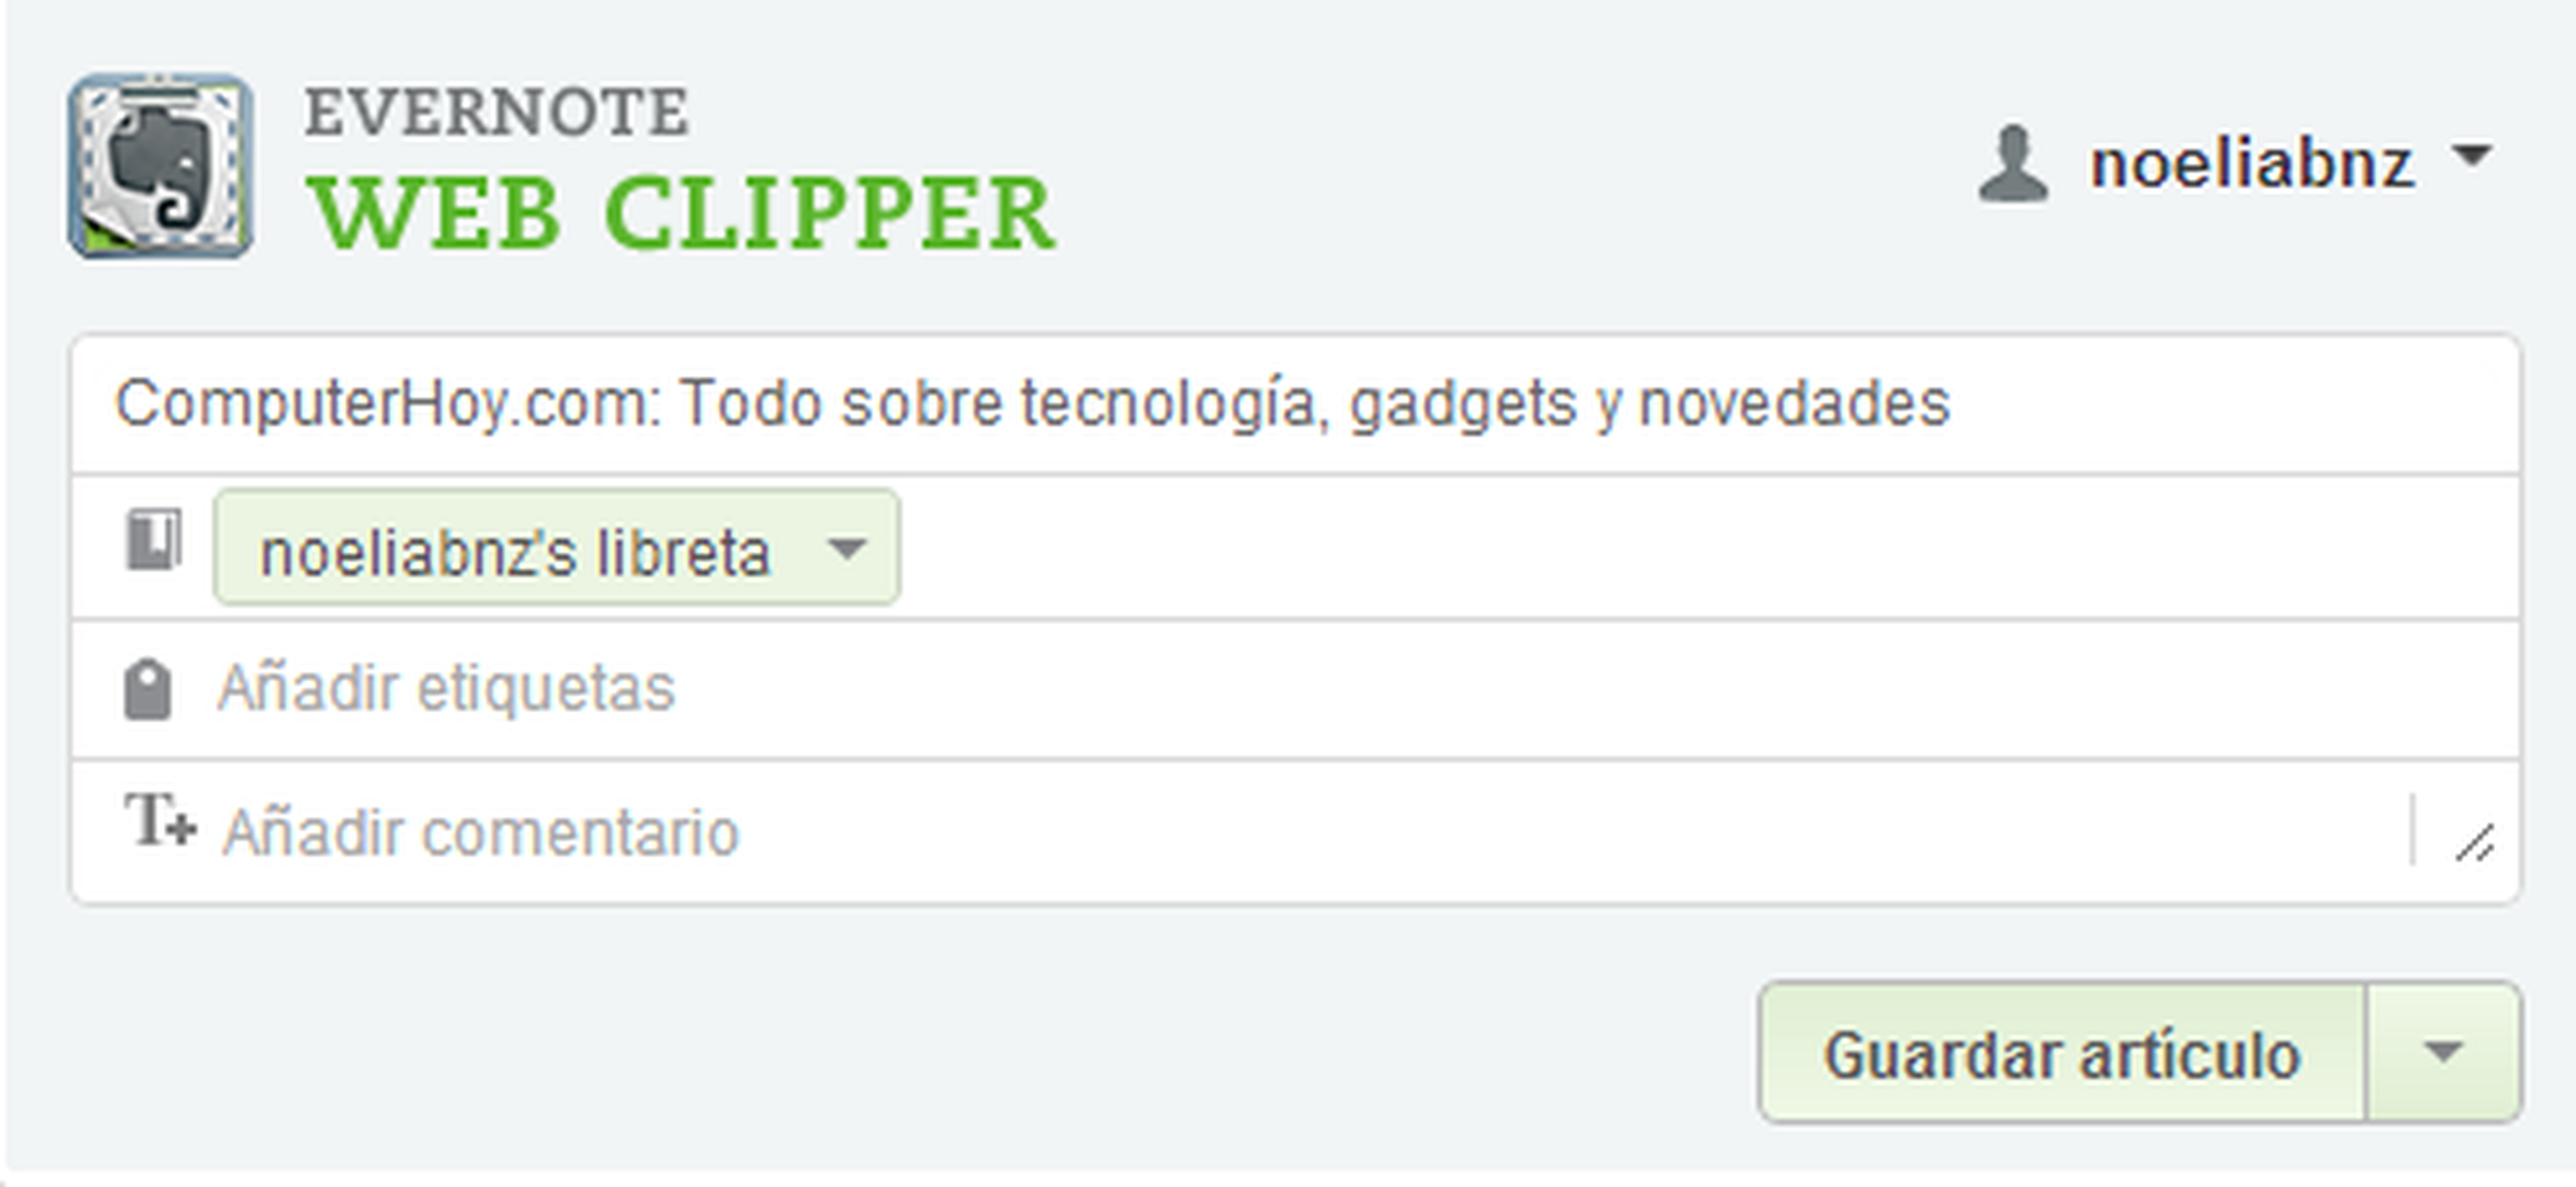 Web Clipper